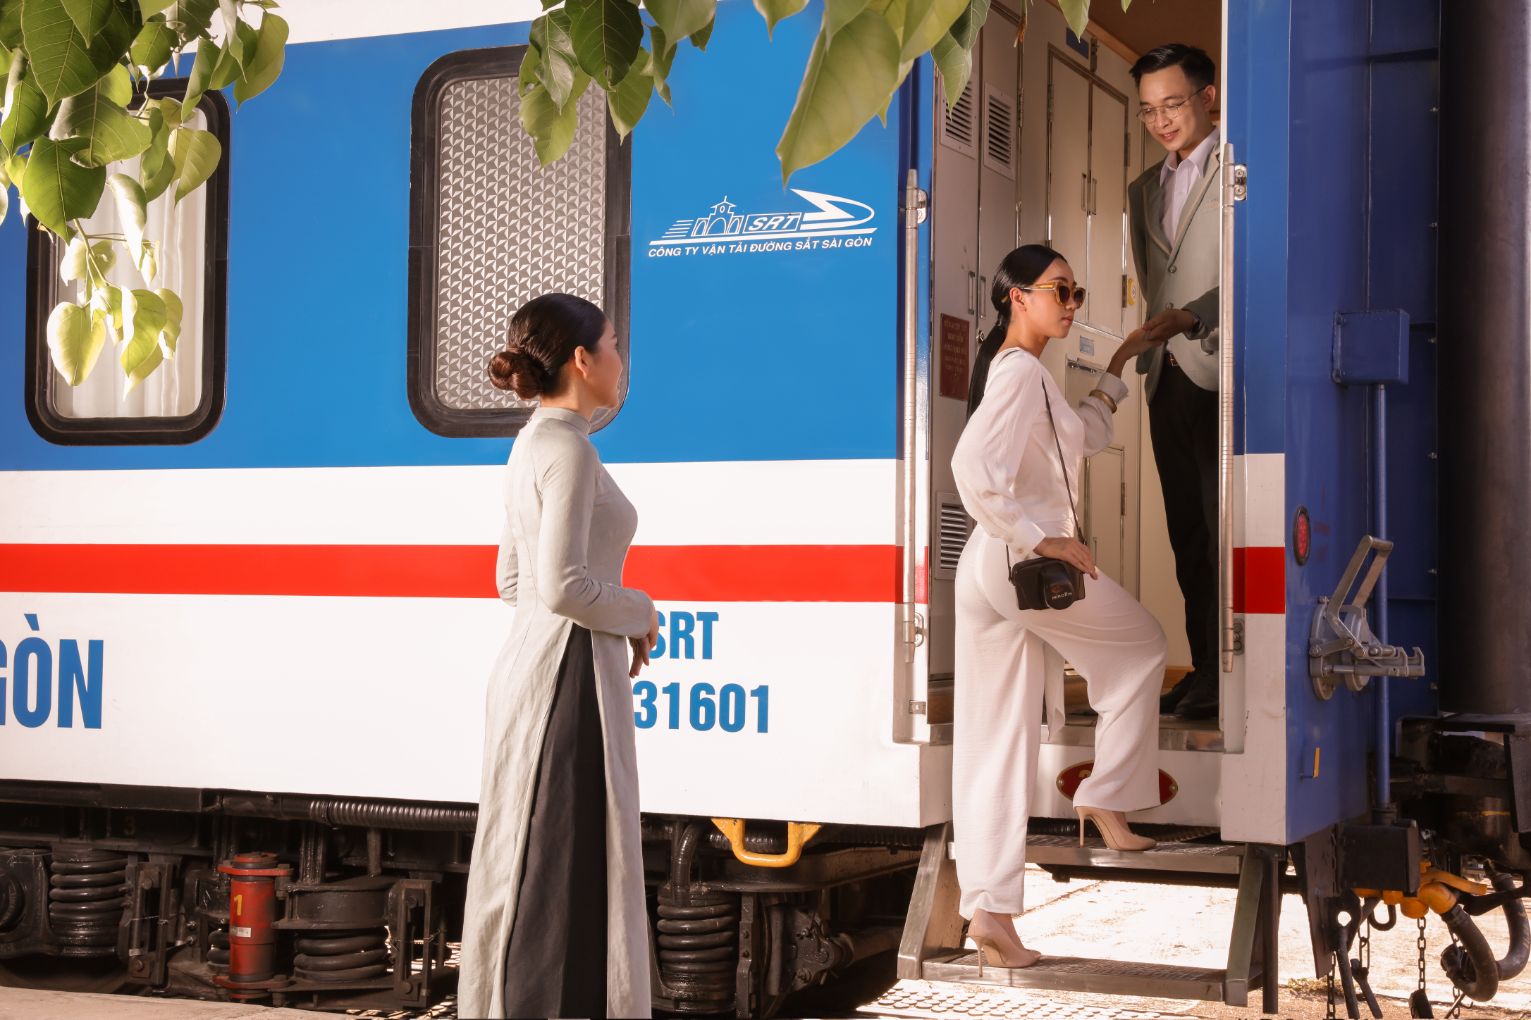 CNN appraises Viet Nam’s new luxury train route